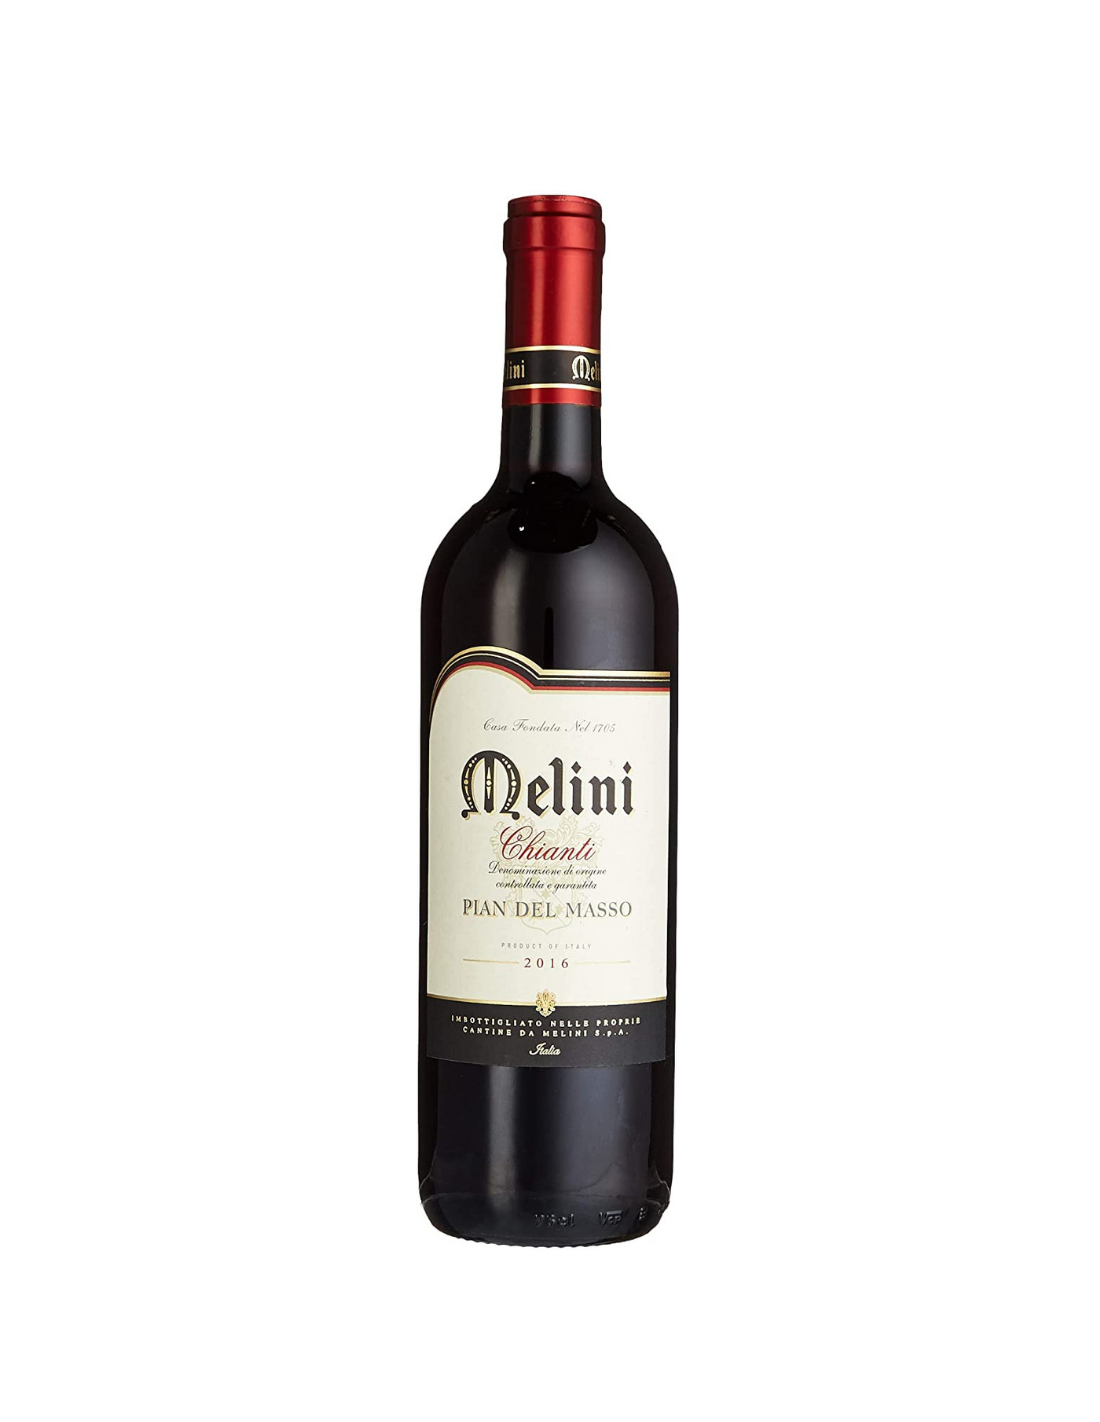 Vin rosu sec, Melini Chianti Pian del Masso 2016, 13% alc., 0.75L, Italia alcooldiscount.ro